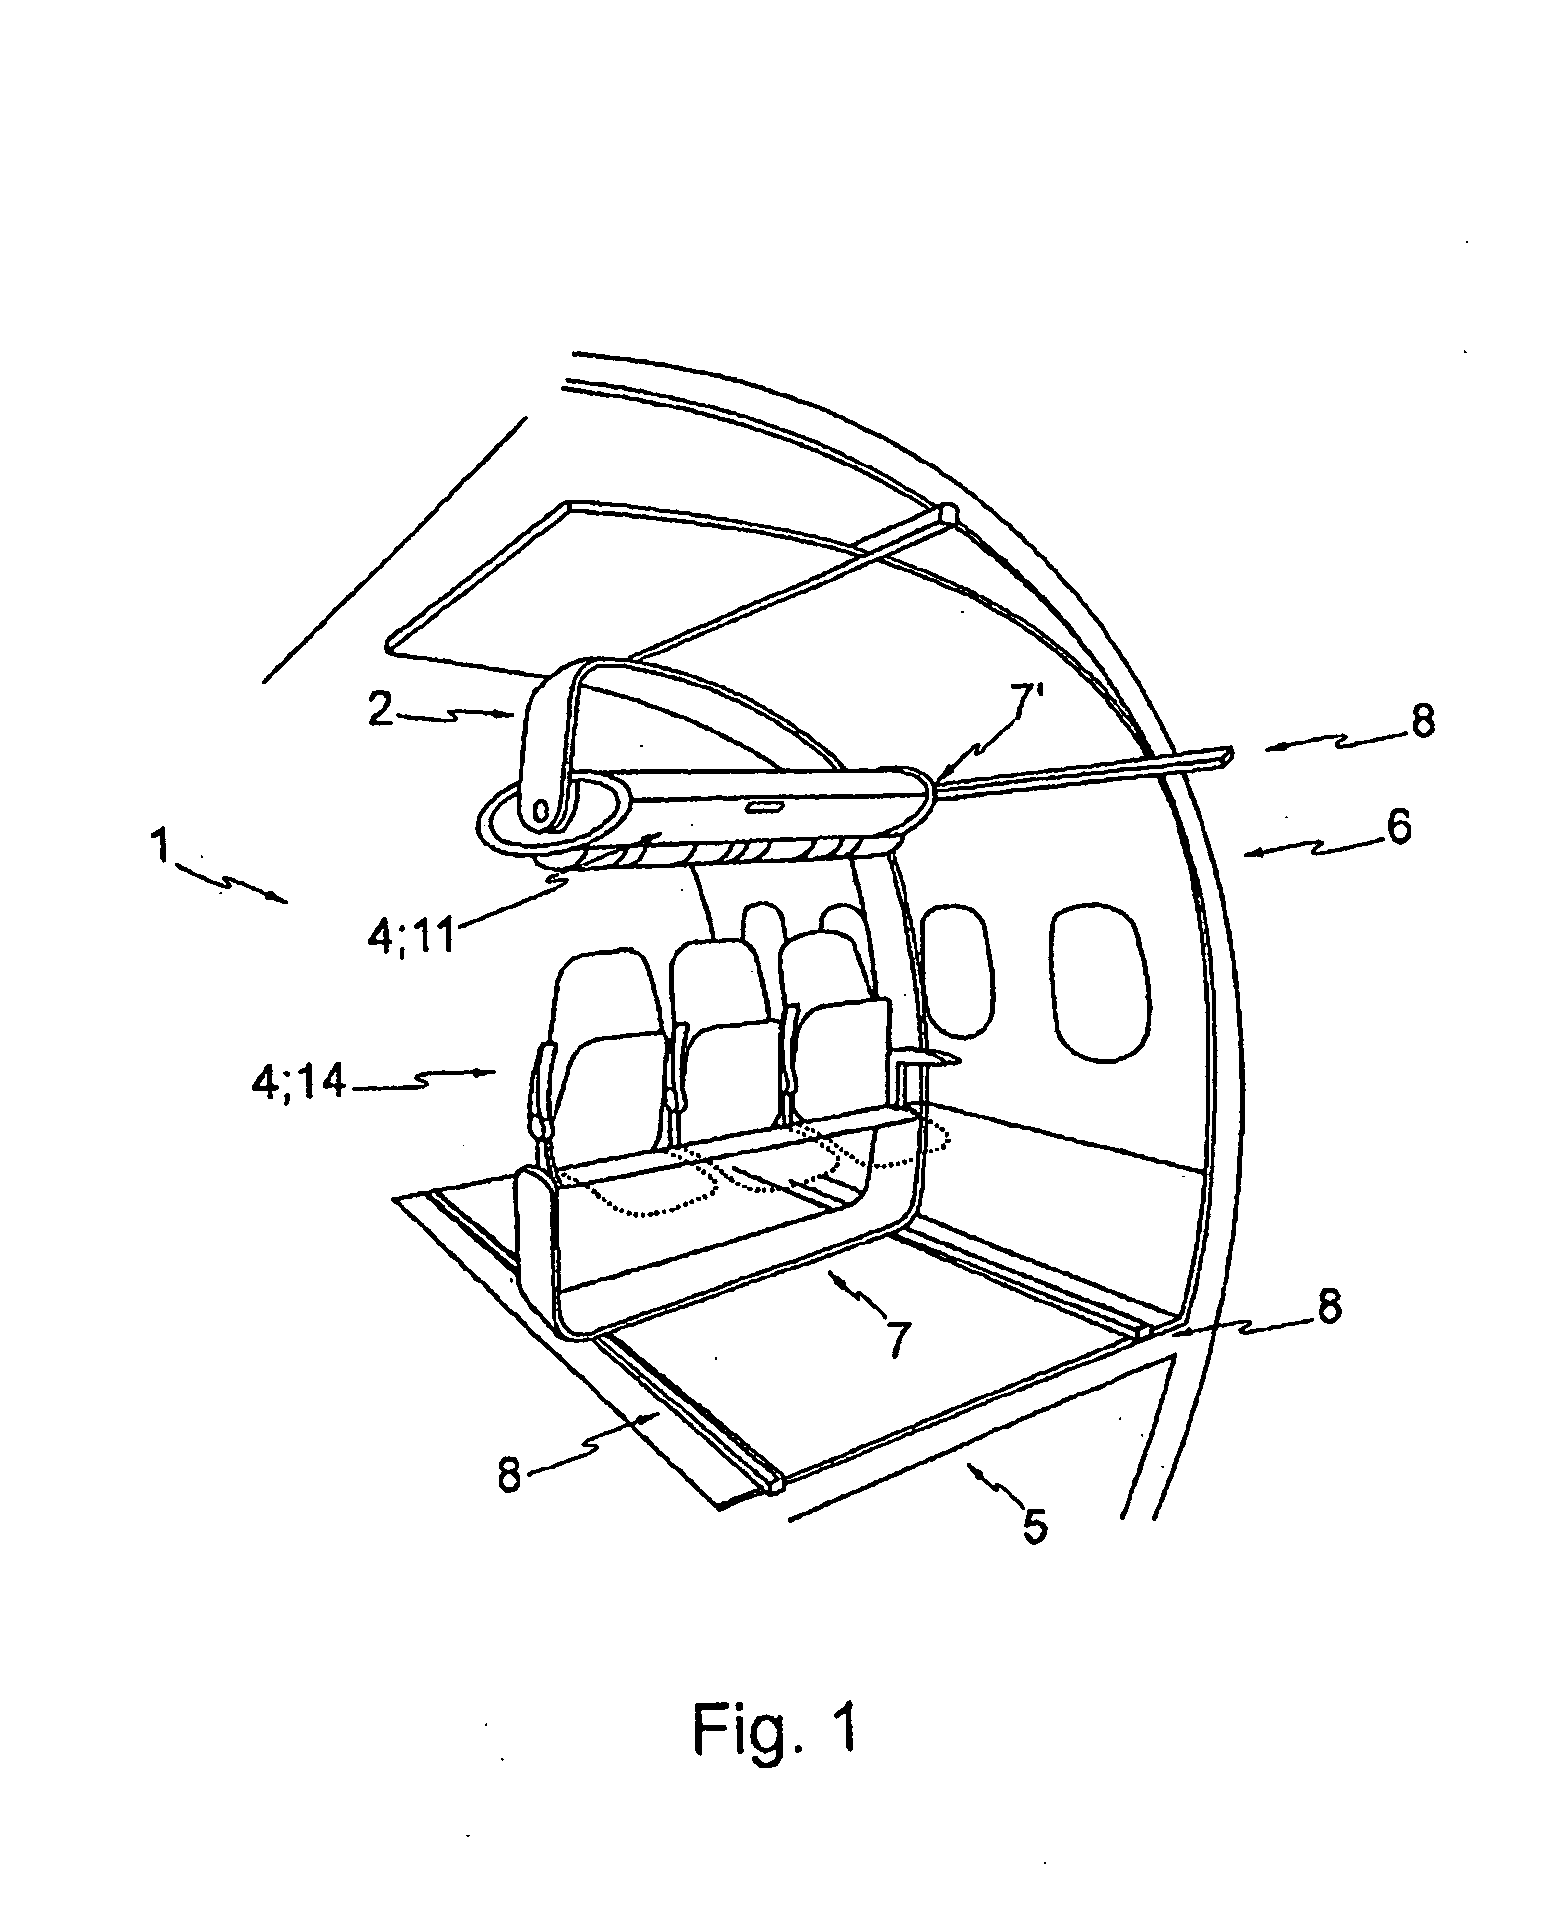 Module for an Aircraft